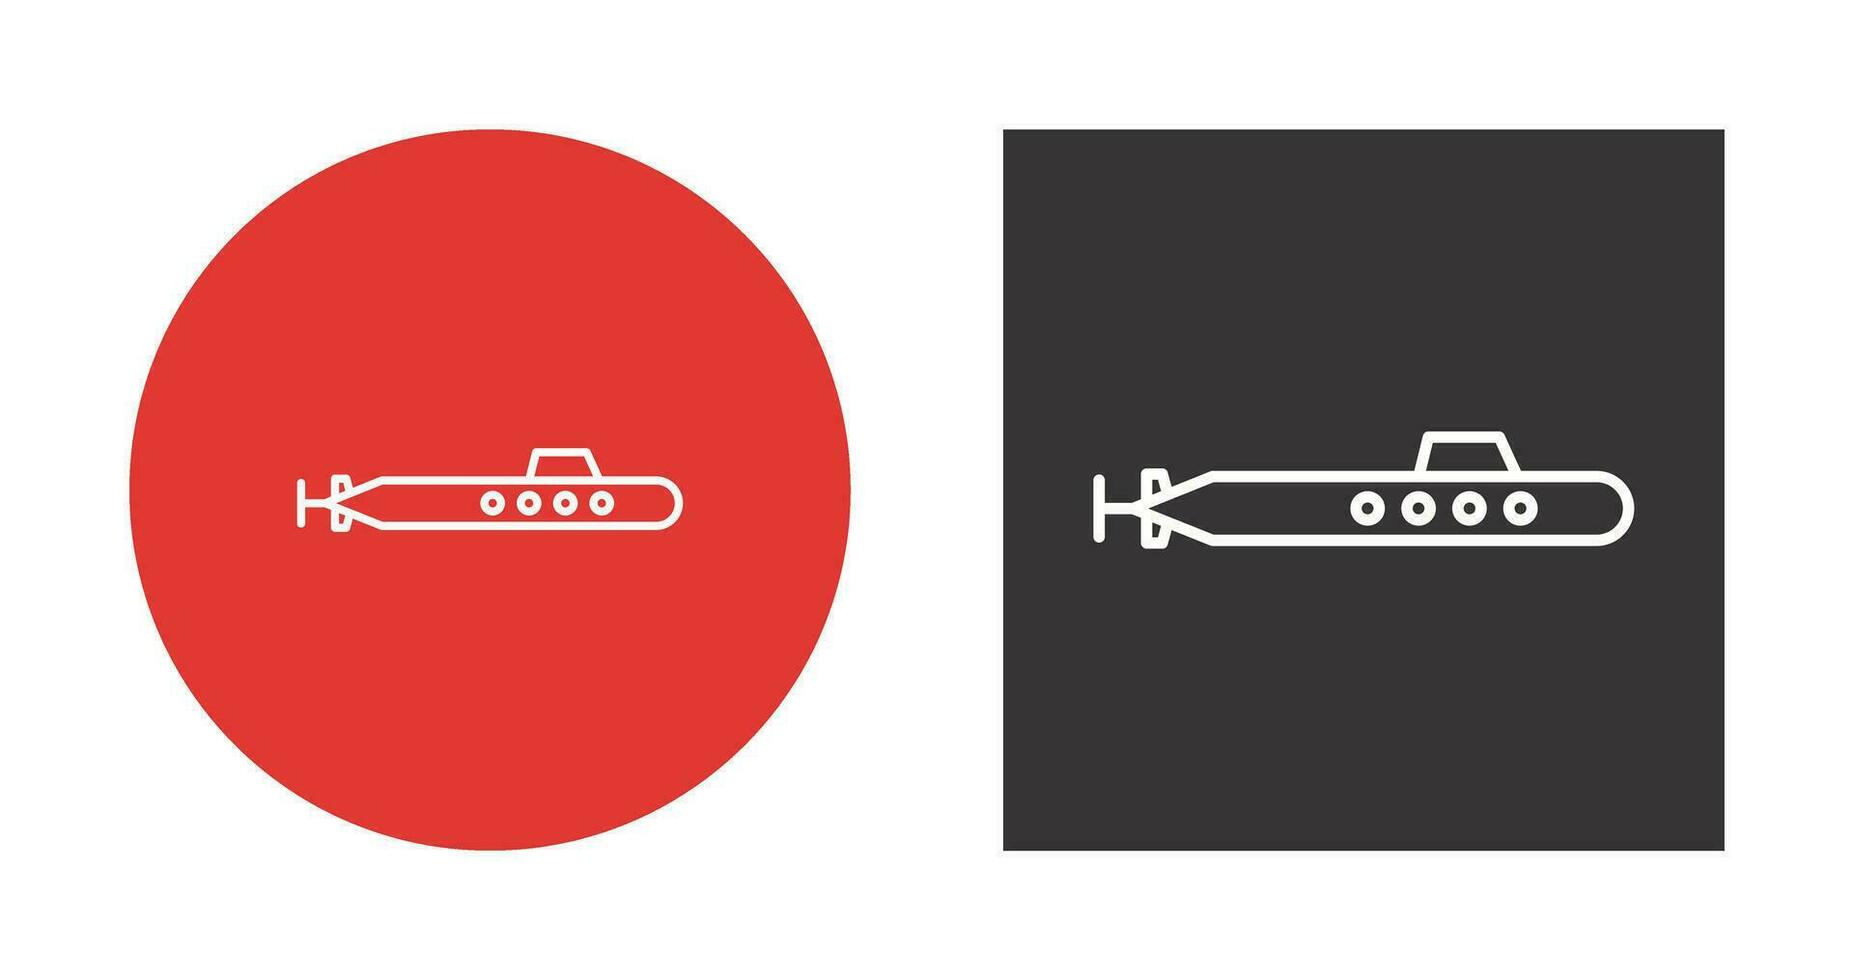 onderzeeër vector pictogram